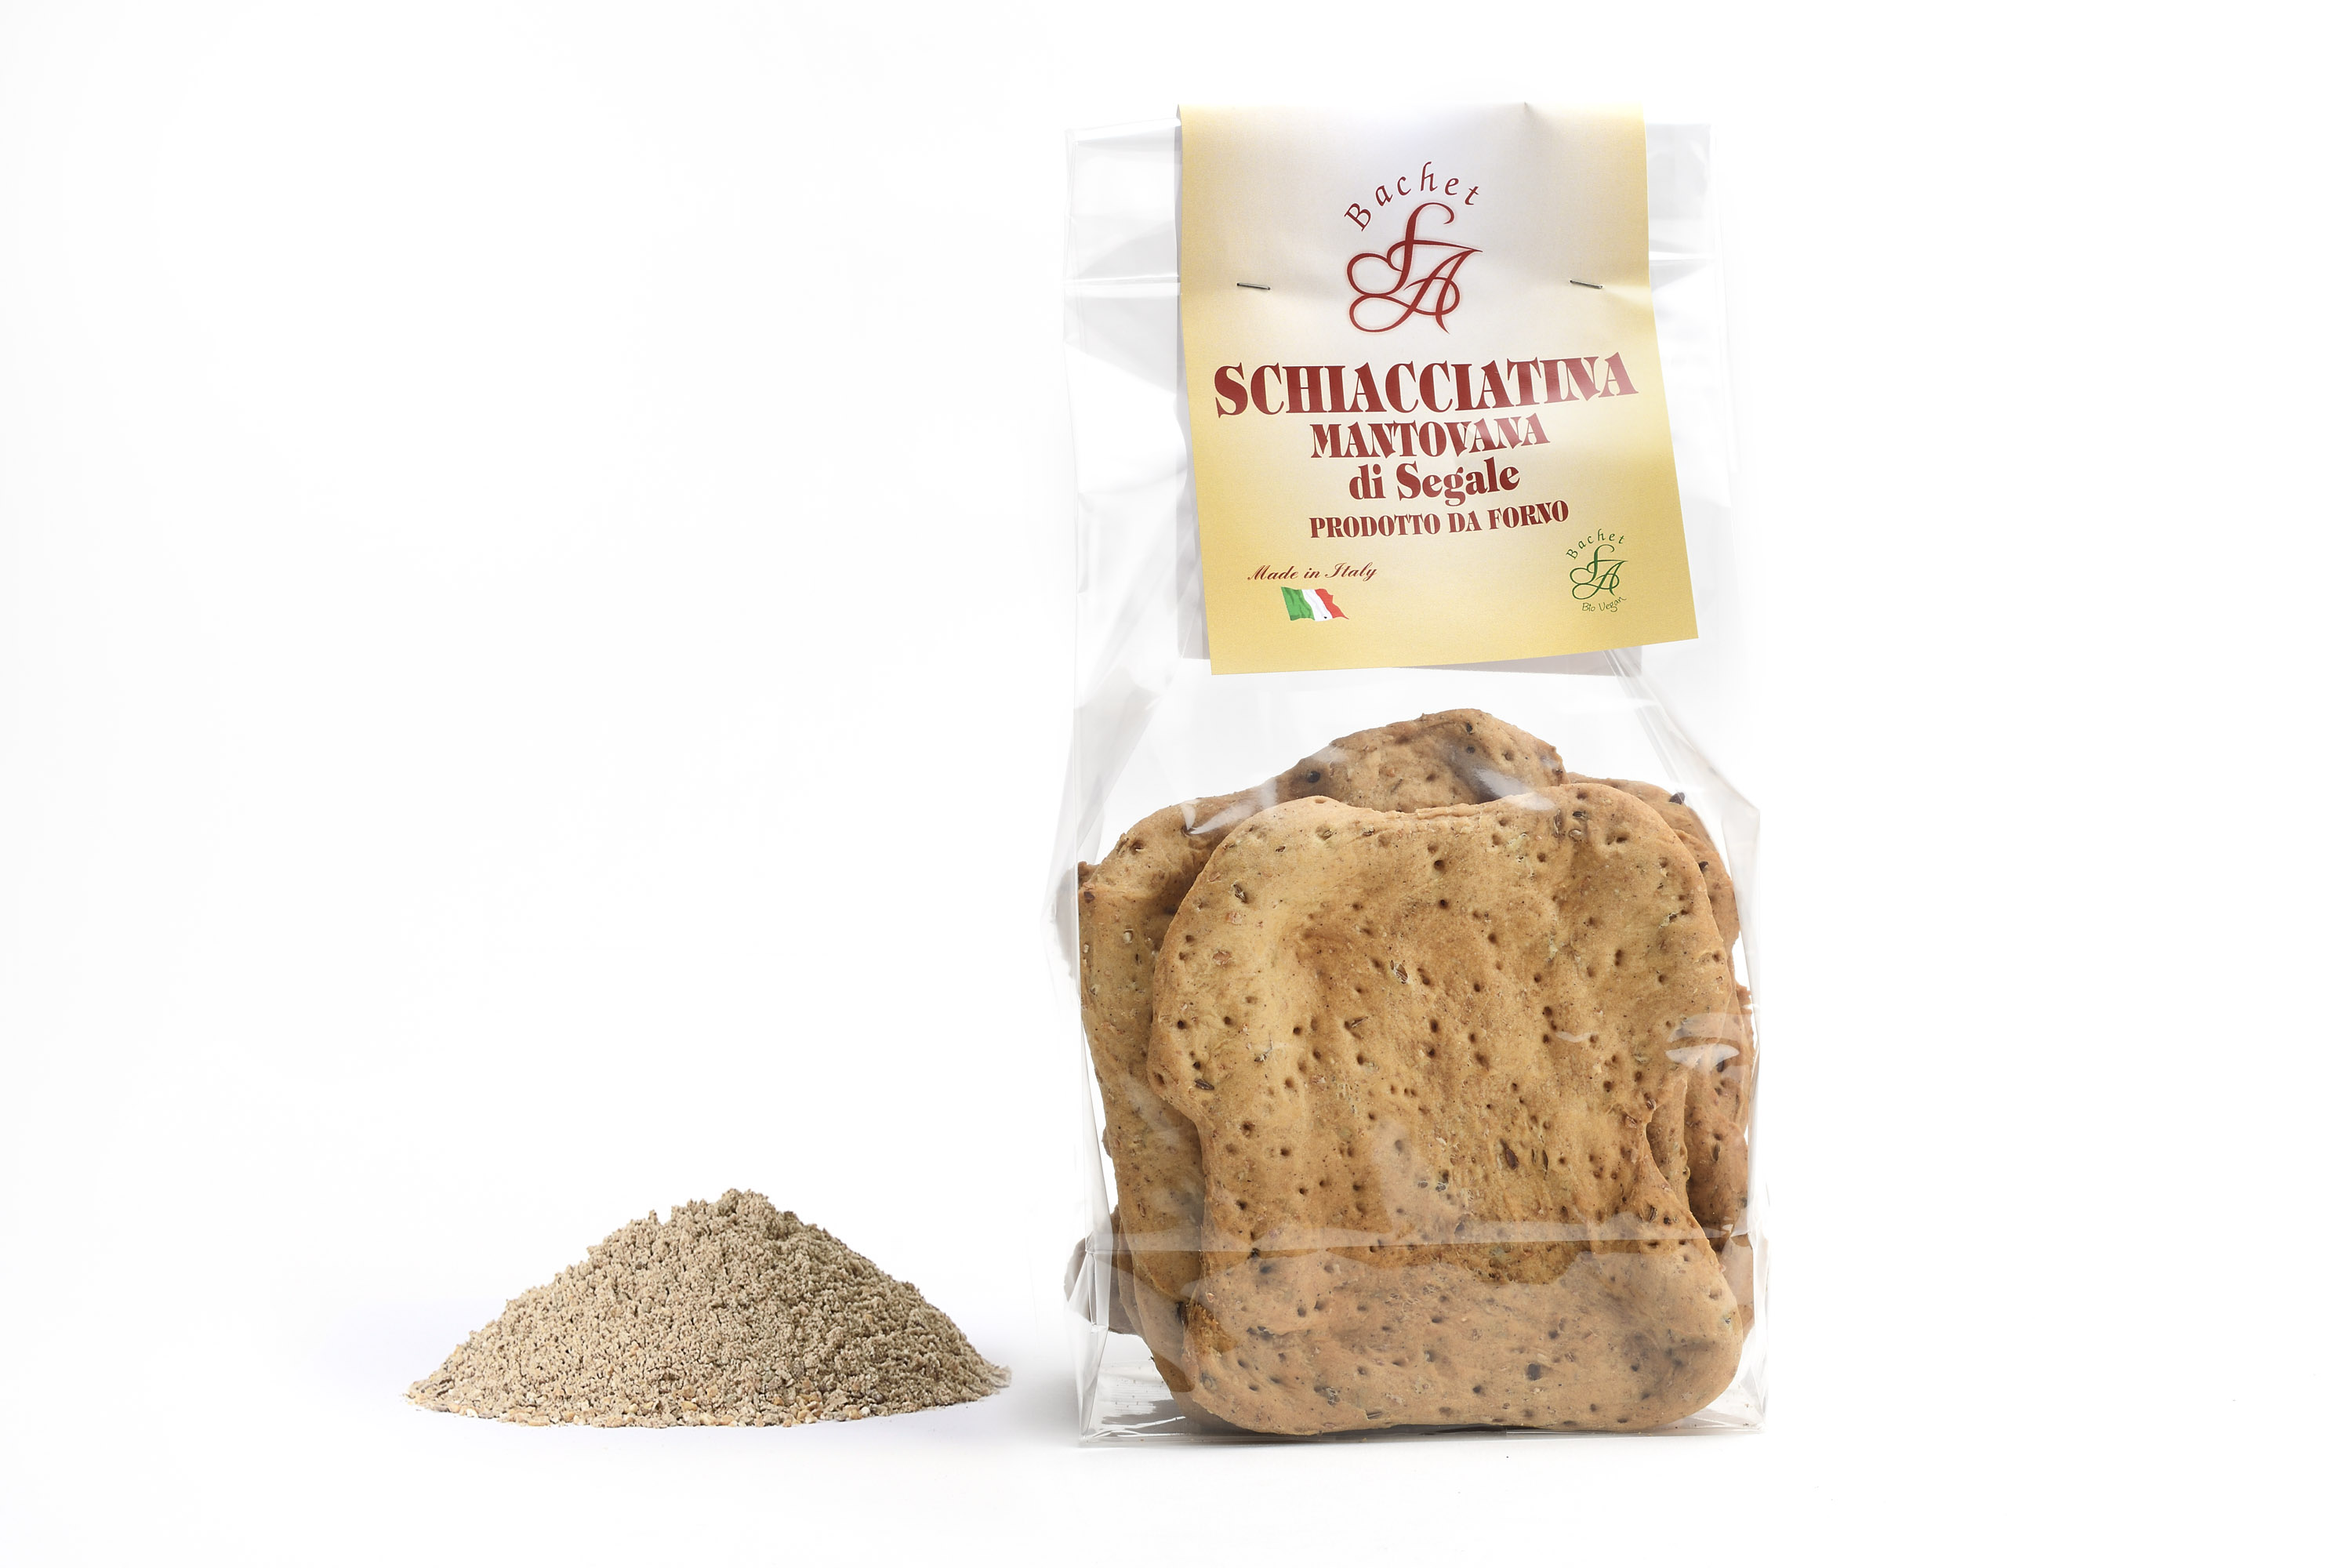 Schiacciatina - Cereals with Cumin Seeds